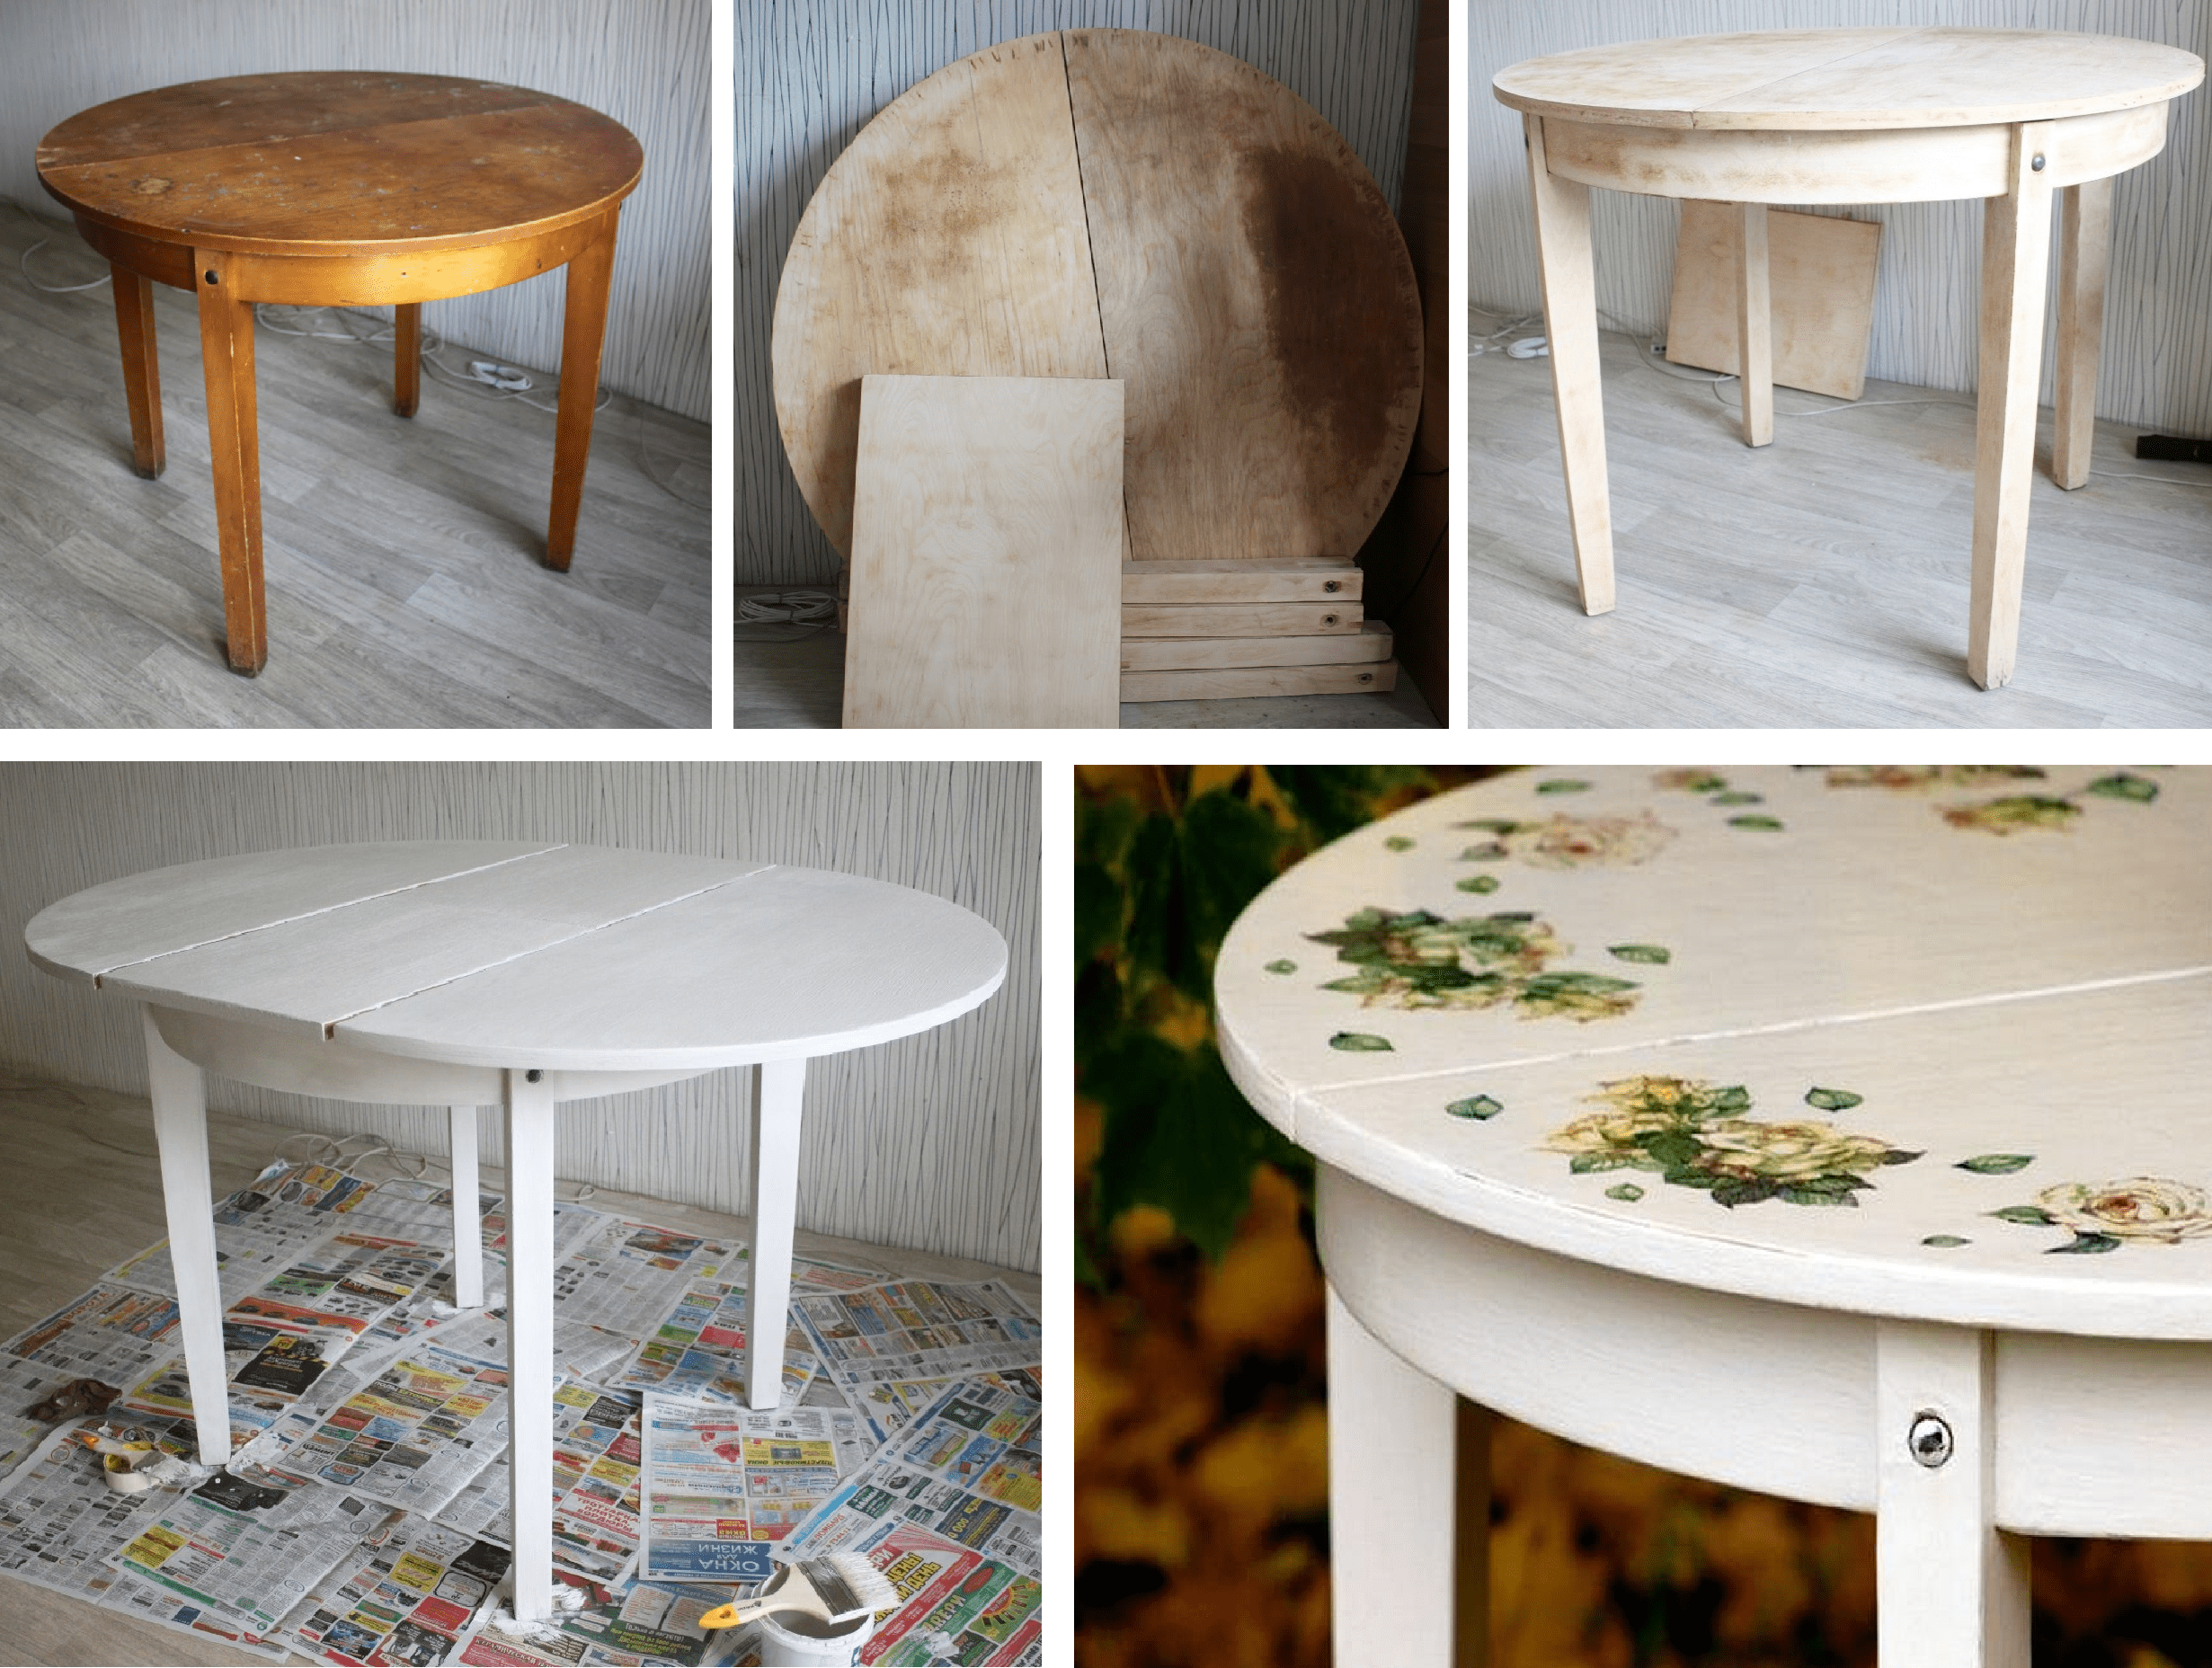 Как самостоятельно покрасить старый стол в домашних условиях Каковы нюансы покраски столов с лакированной или ламинированной поверхностью Какие краски подойдут для этого